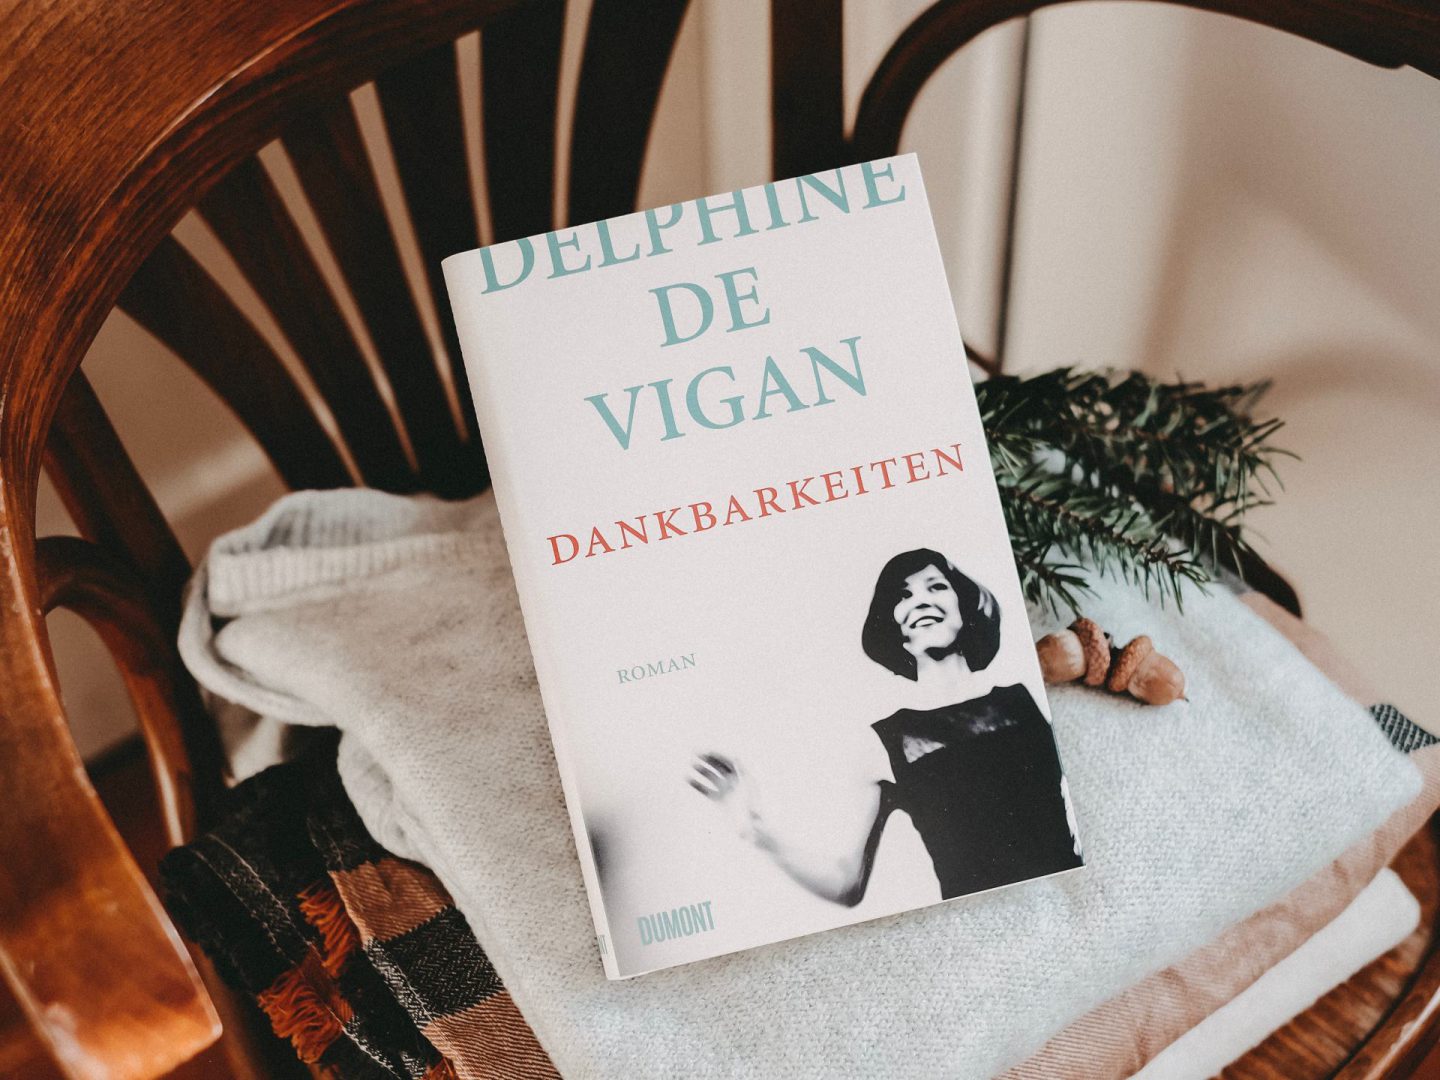 Rezension Delphine de Vigan – Dankbarkeiten